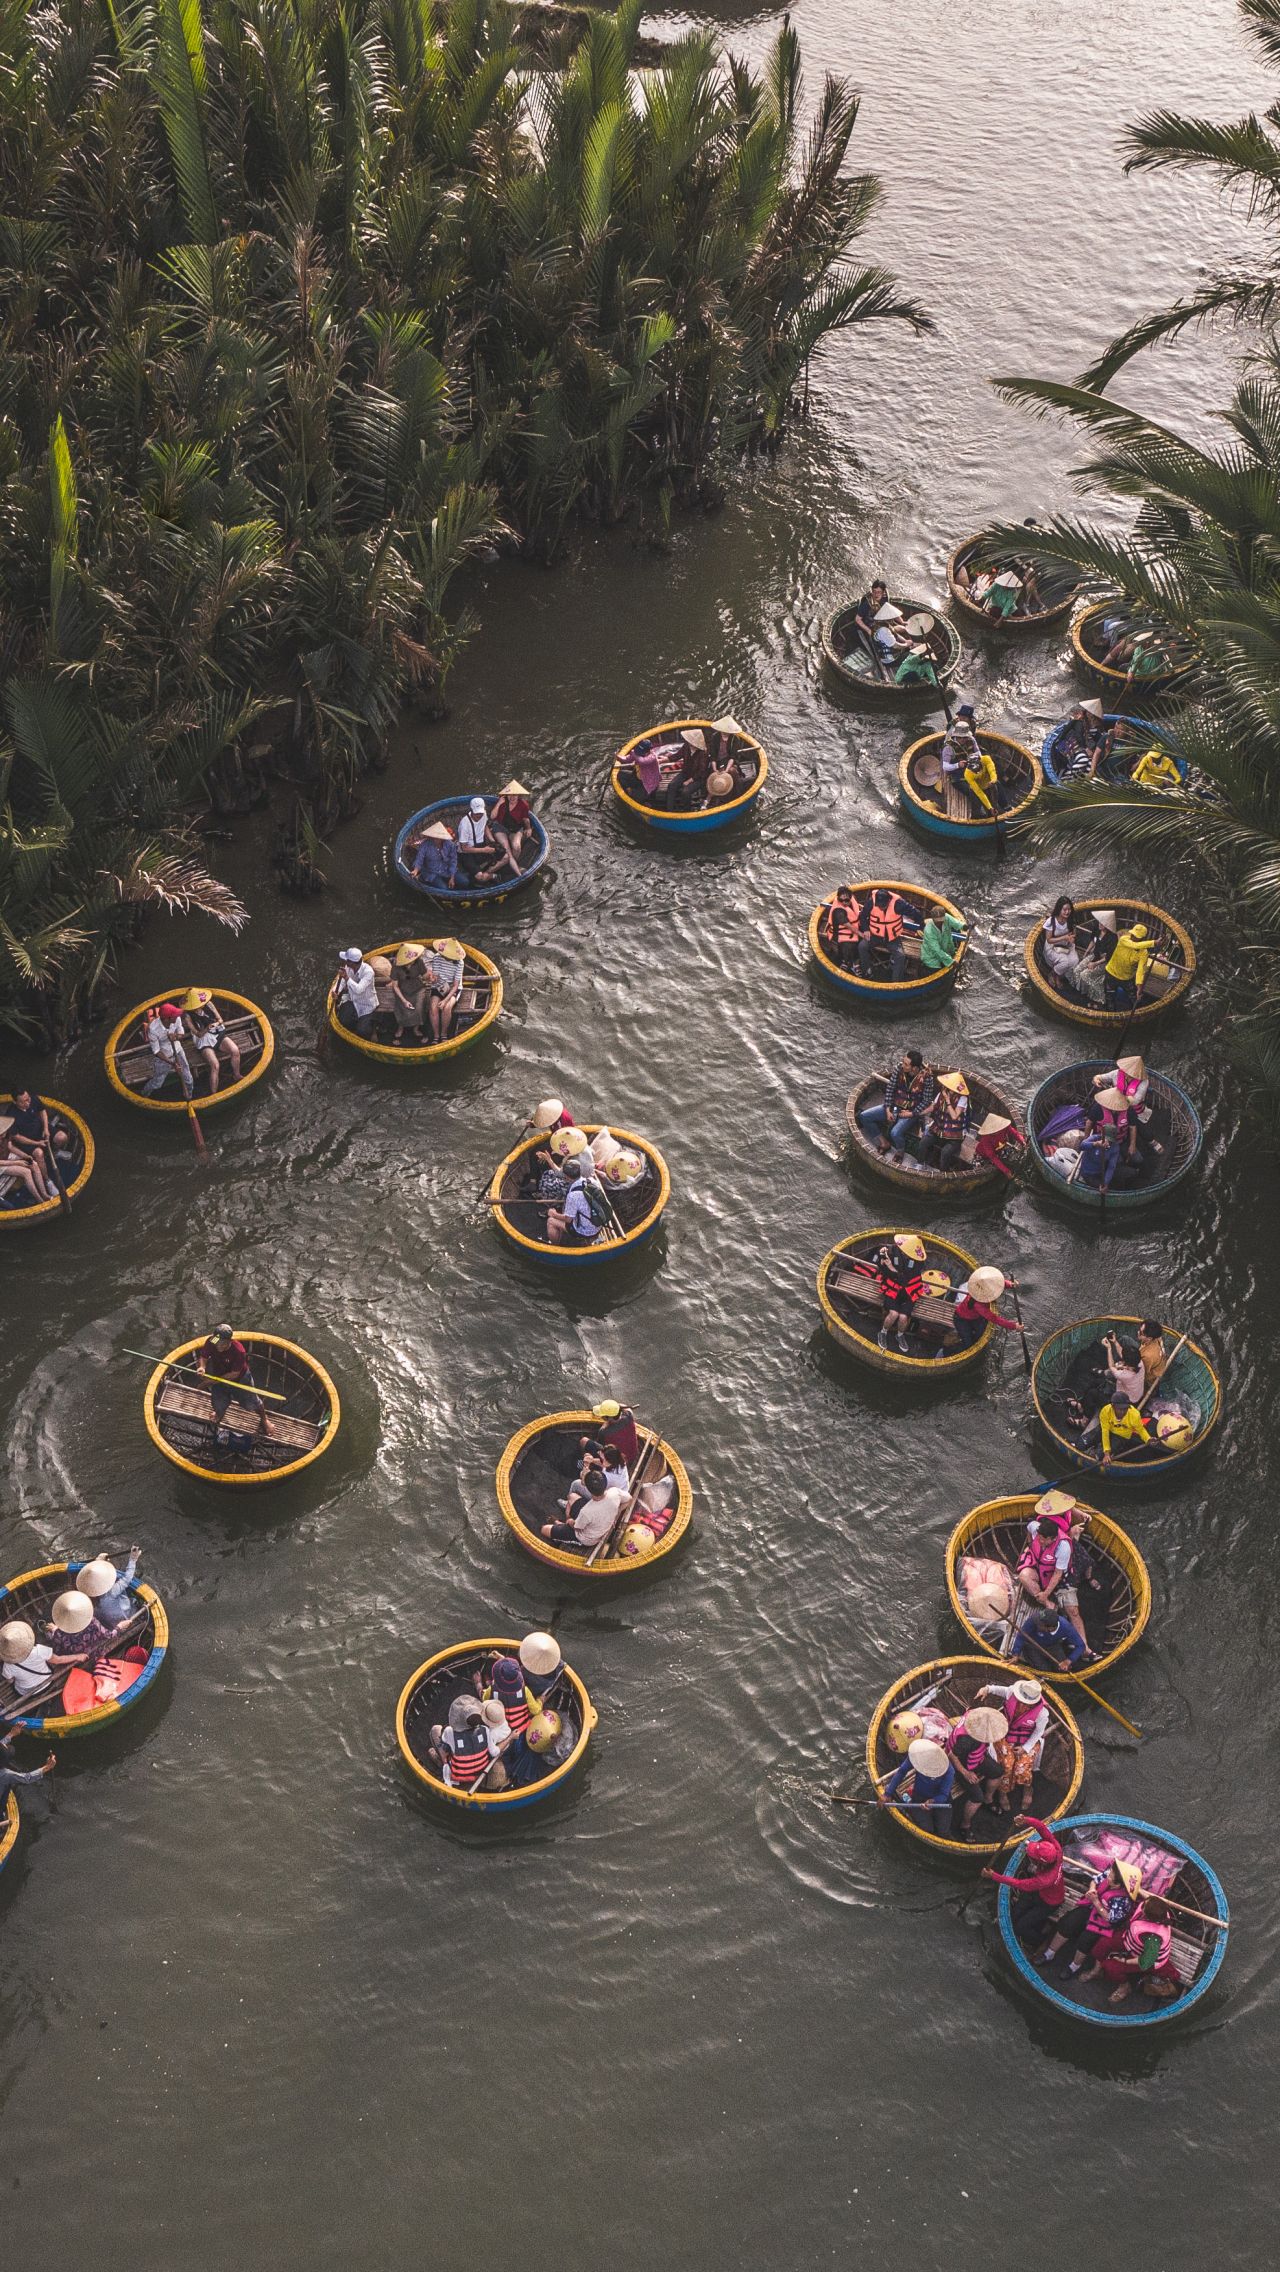 Катание на круглых лодках по реке сквозь тропический лес